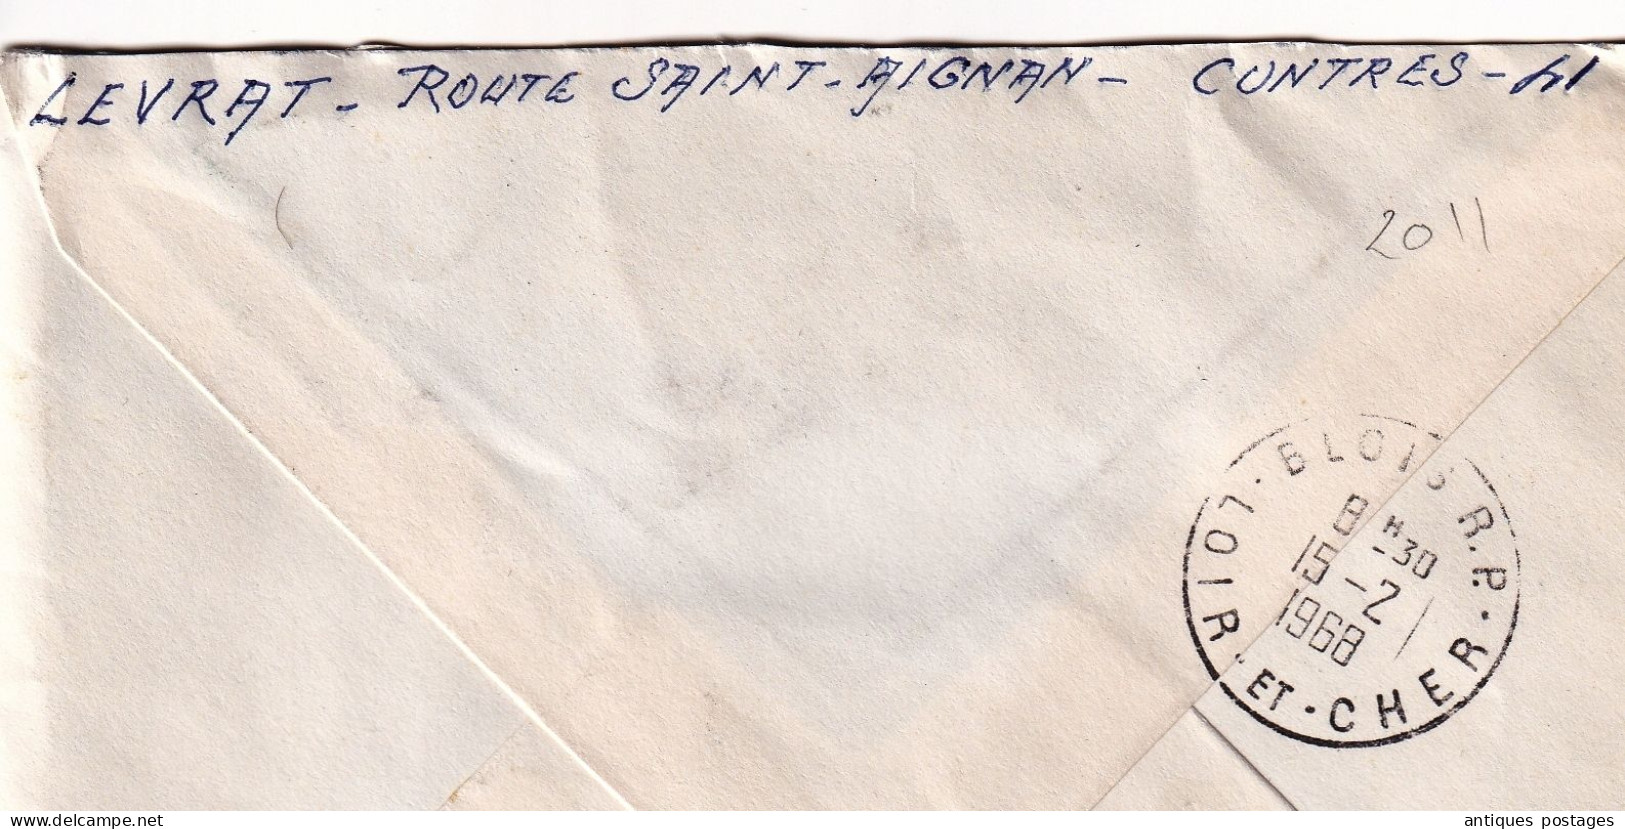 Lettre Recommandé 1968 Contres Loir Et Cher Poste Aérienne Mystère 20 Chapelle Roncham Haute Saône - Briefe U. Dokumente